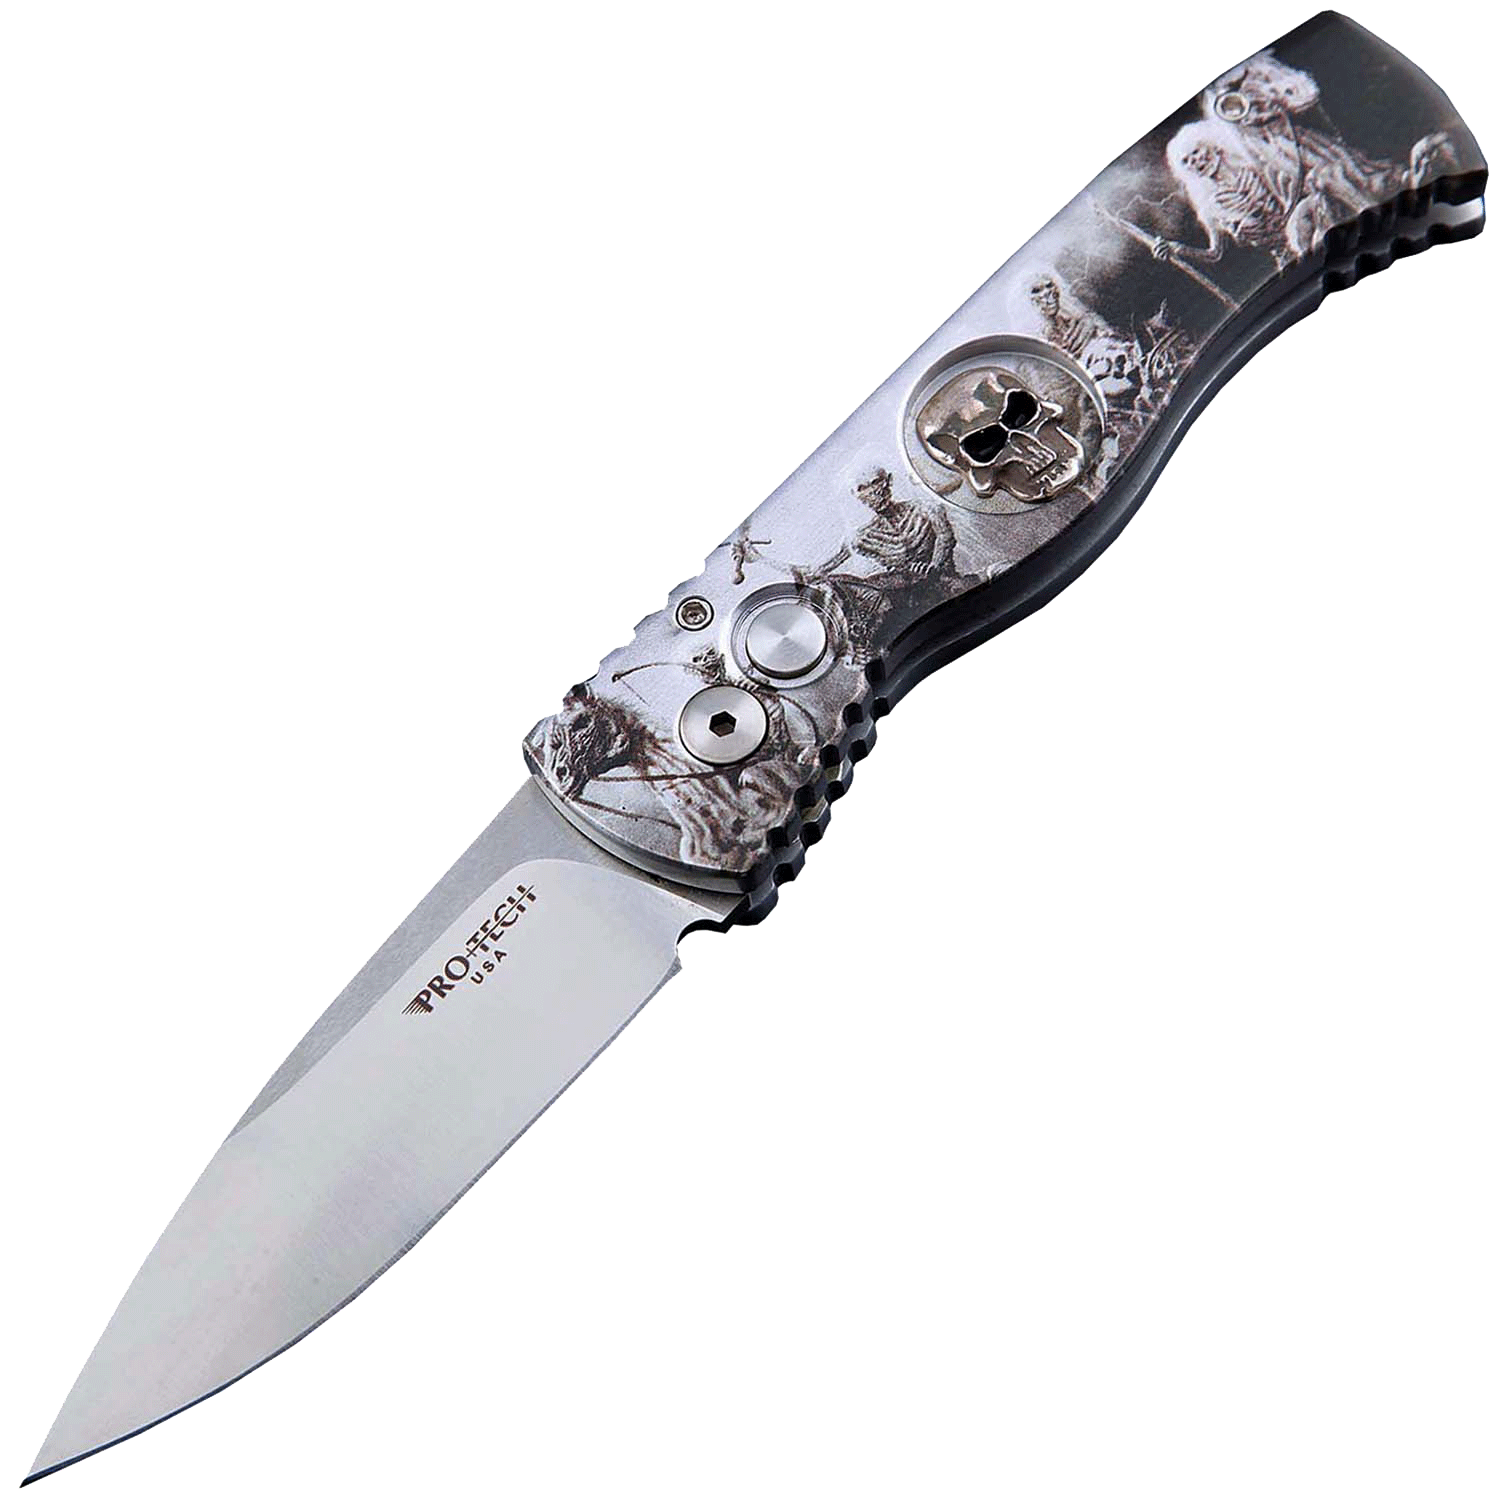 Автоматический складной нож Pro-Tech TR-2.4H1. Bruce Show Skull, клинок Stonewash, сталь 154CM, рукоять алюминий, рисунок скелеты пиратов - фото 1